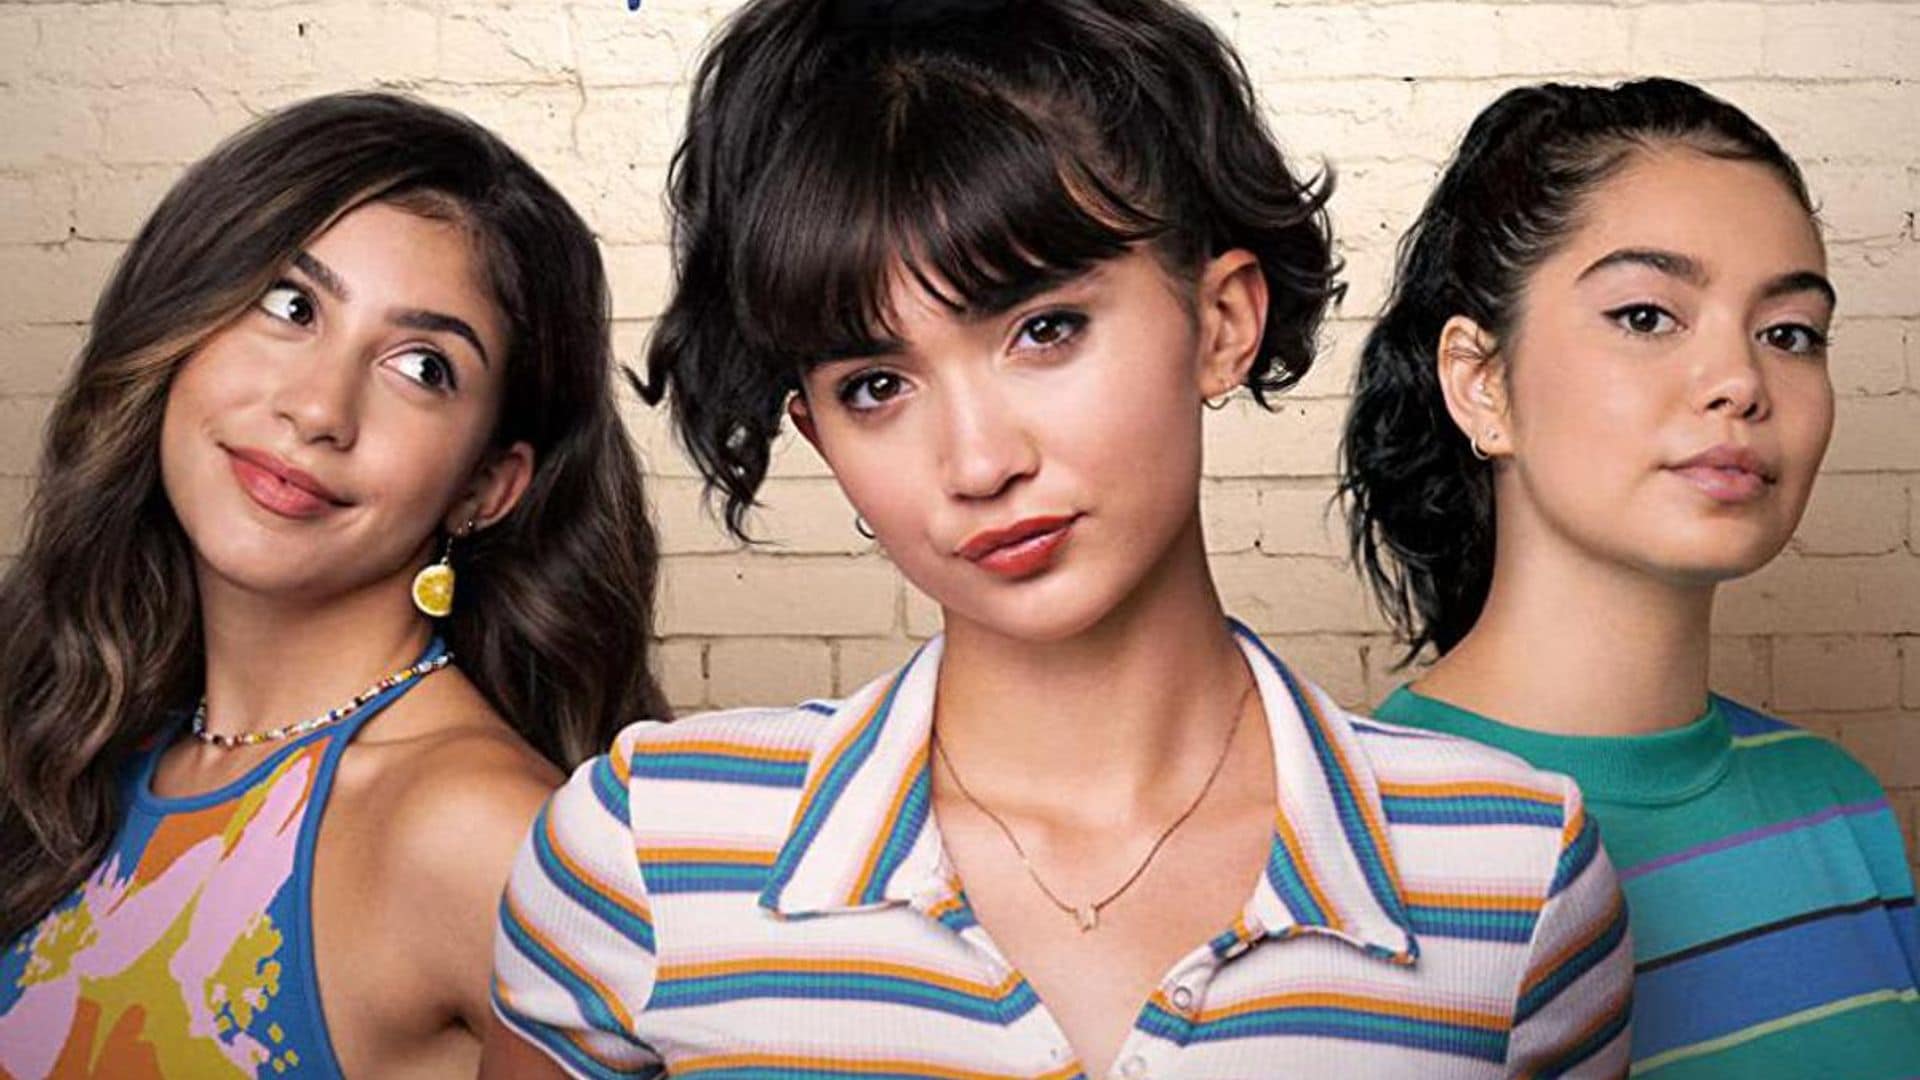 Domirican actress Isabella Ferreira stars in Hulu’s new LGBTQ-friendly rom-com ‘Crush’